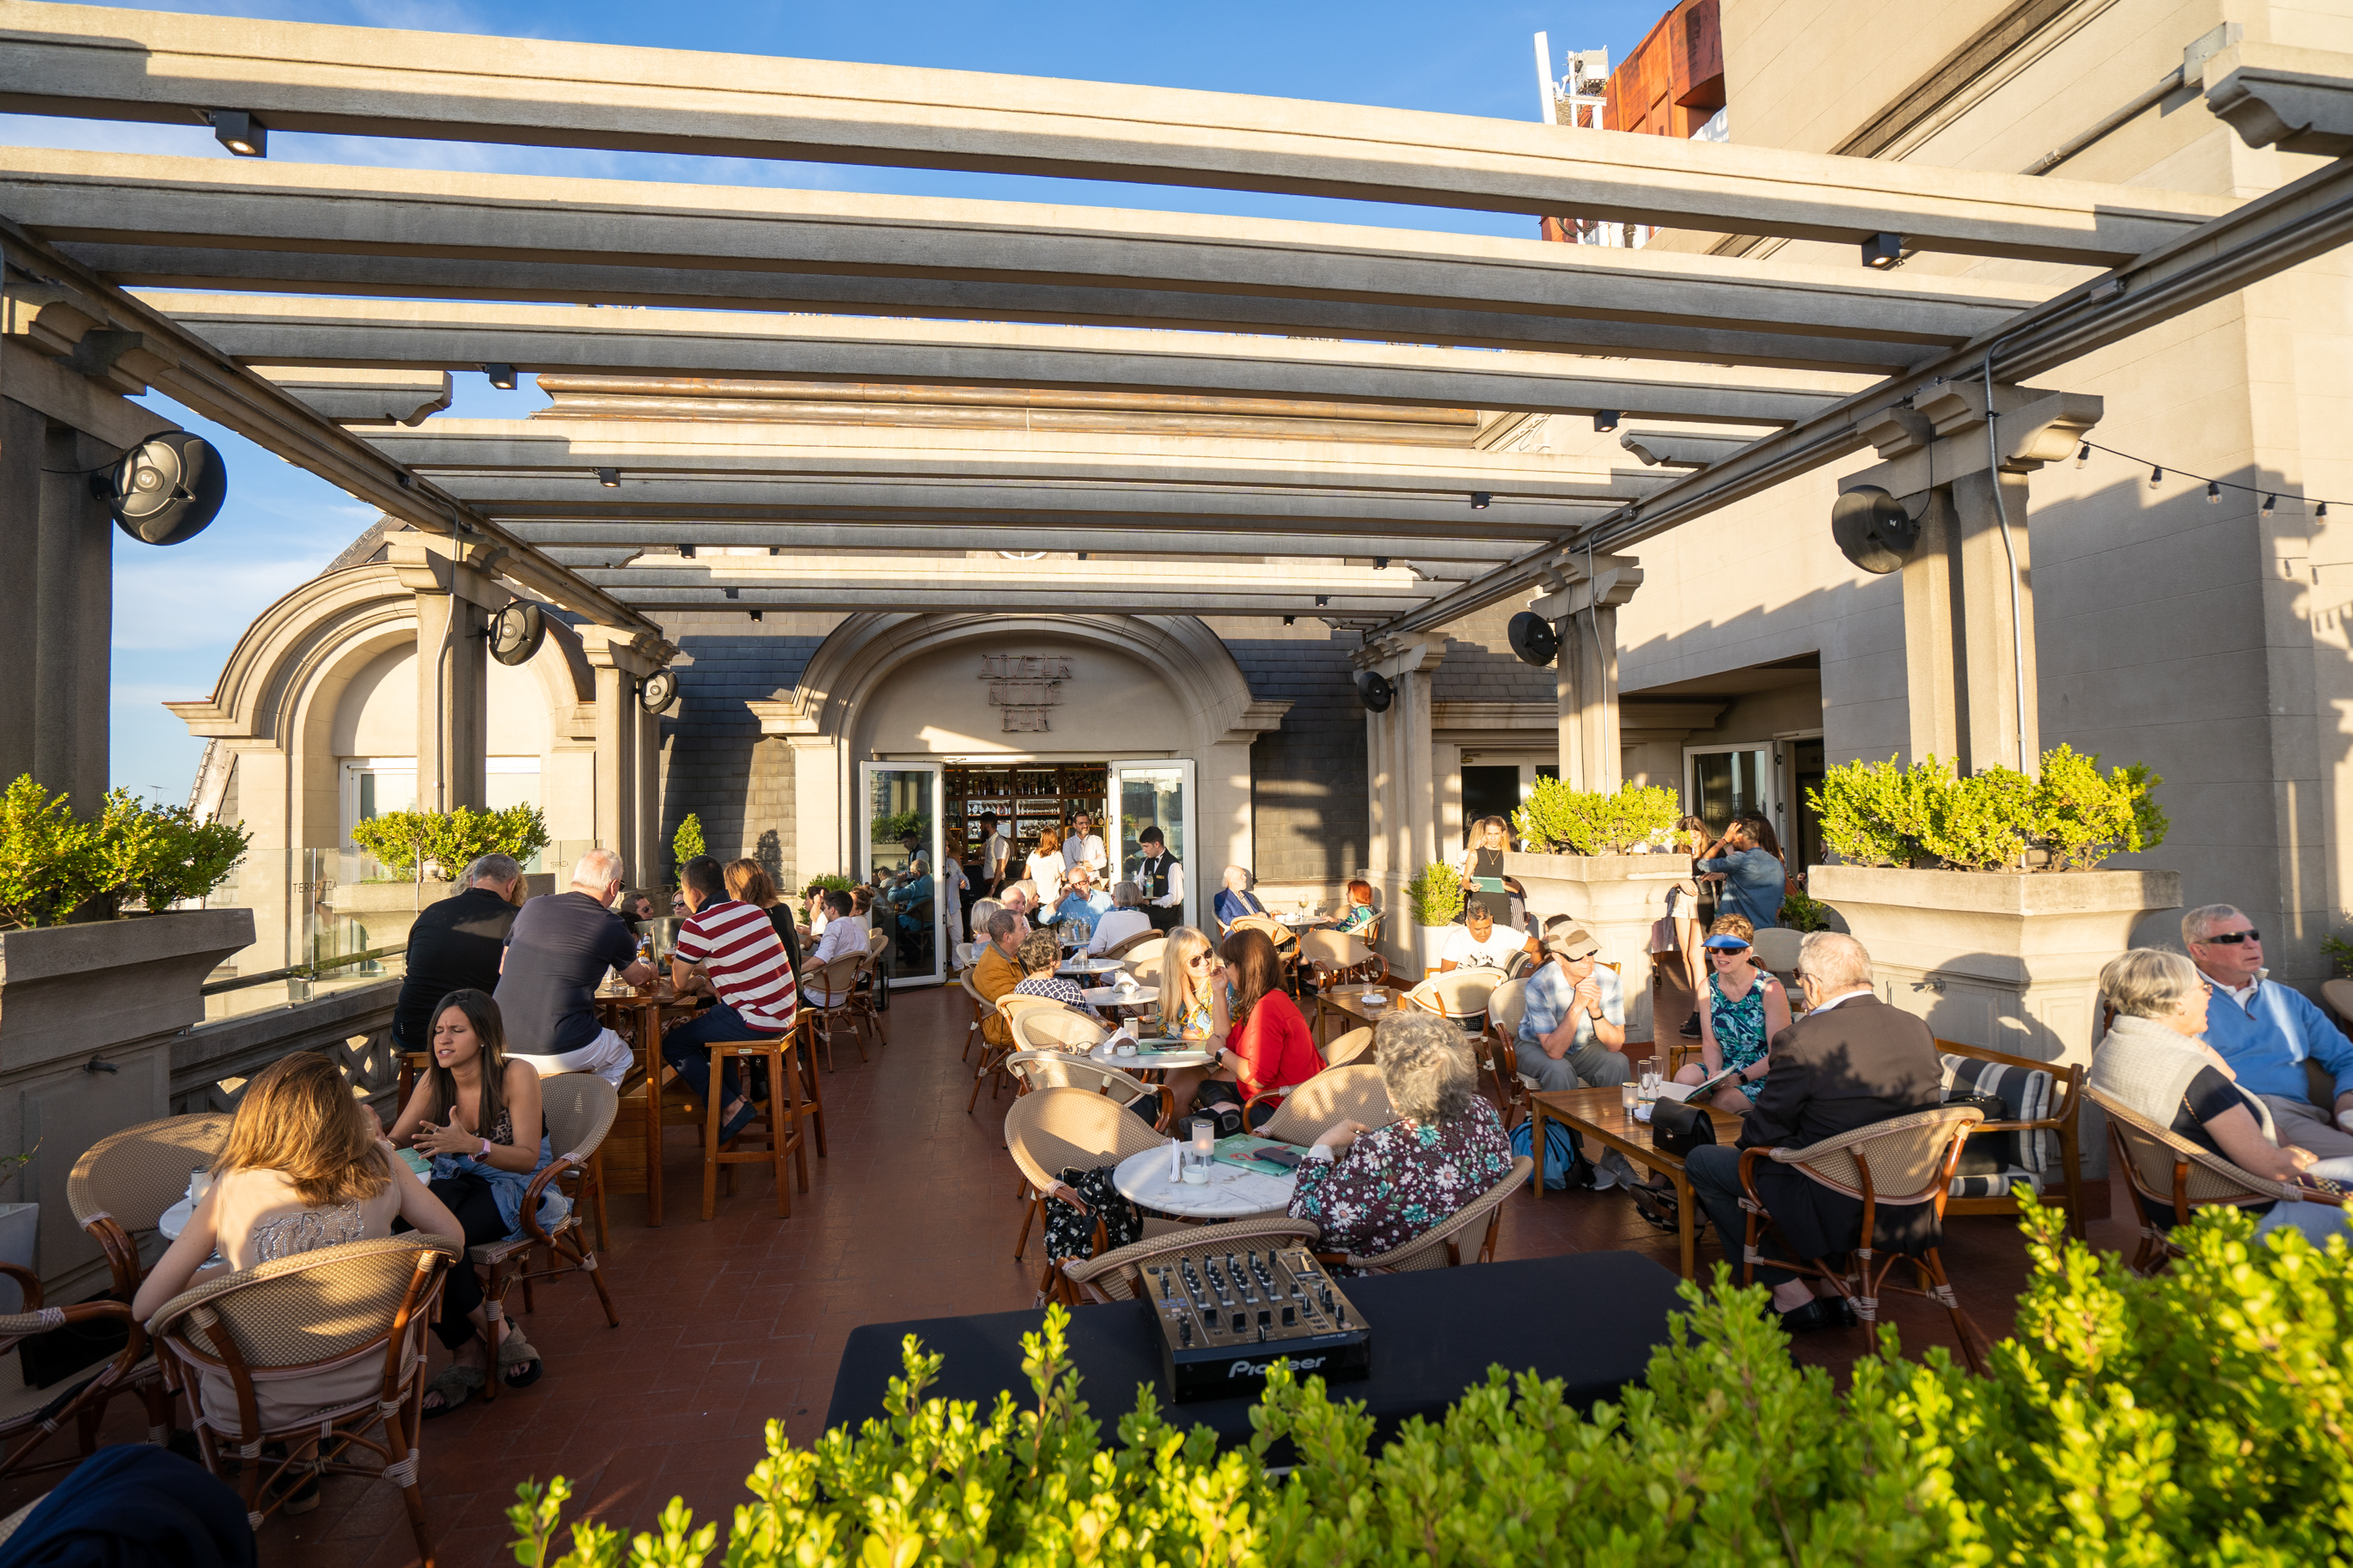 El verano es una estación ideal para disfrutar las terrazas de Buenos Aires (Alvear roof bar)